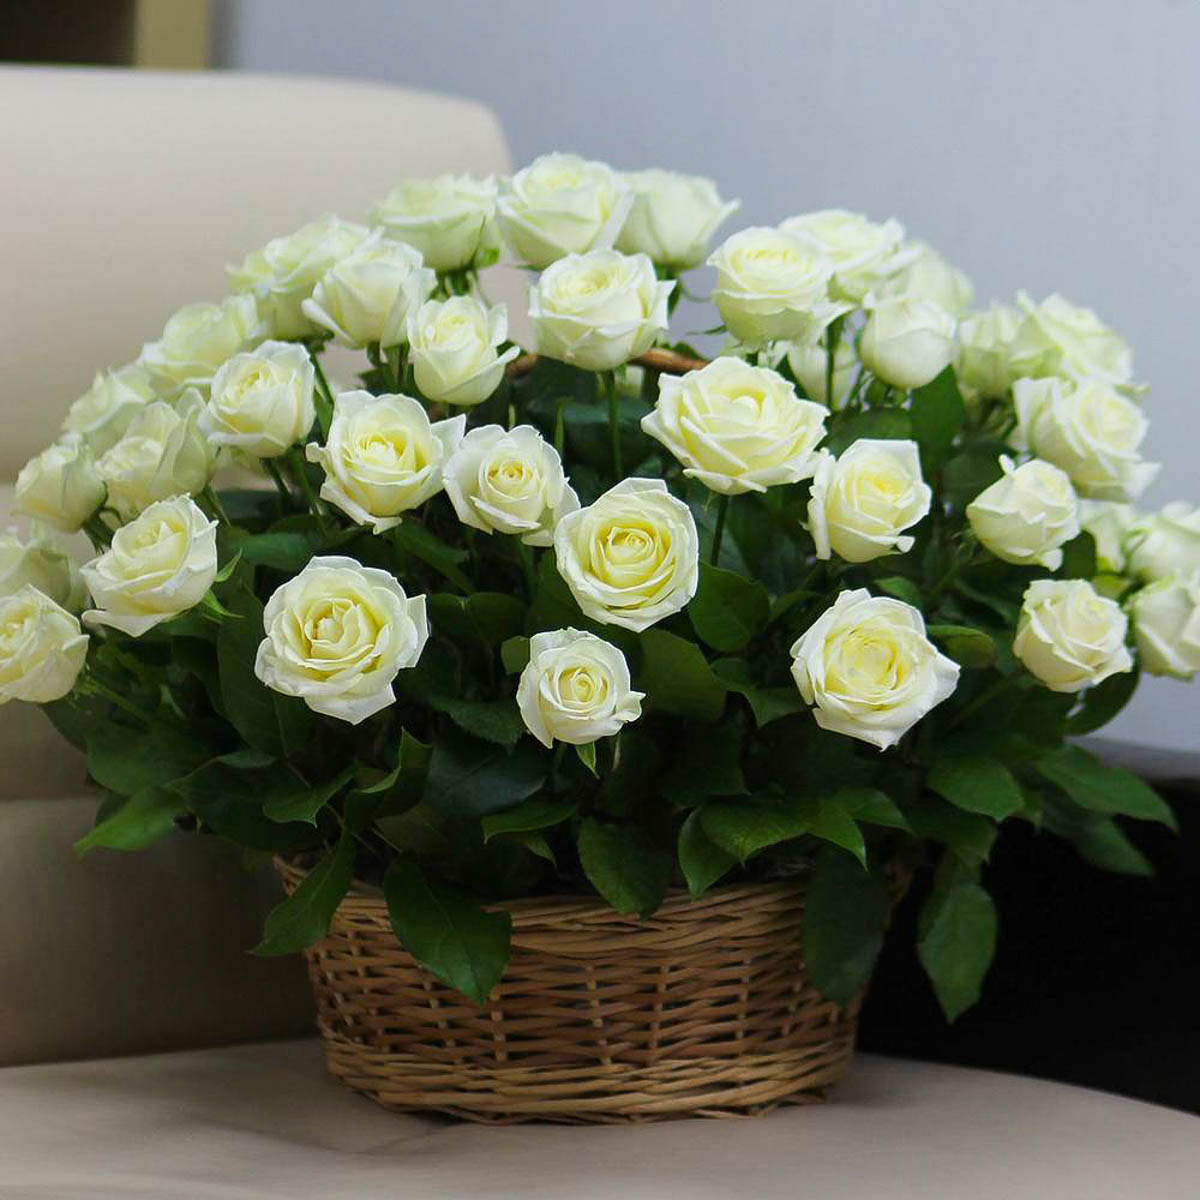 Фото 2 - Большая корзина 51 белая роза